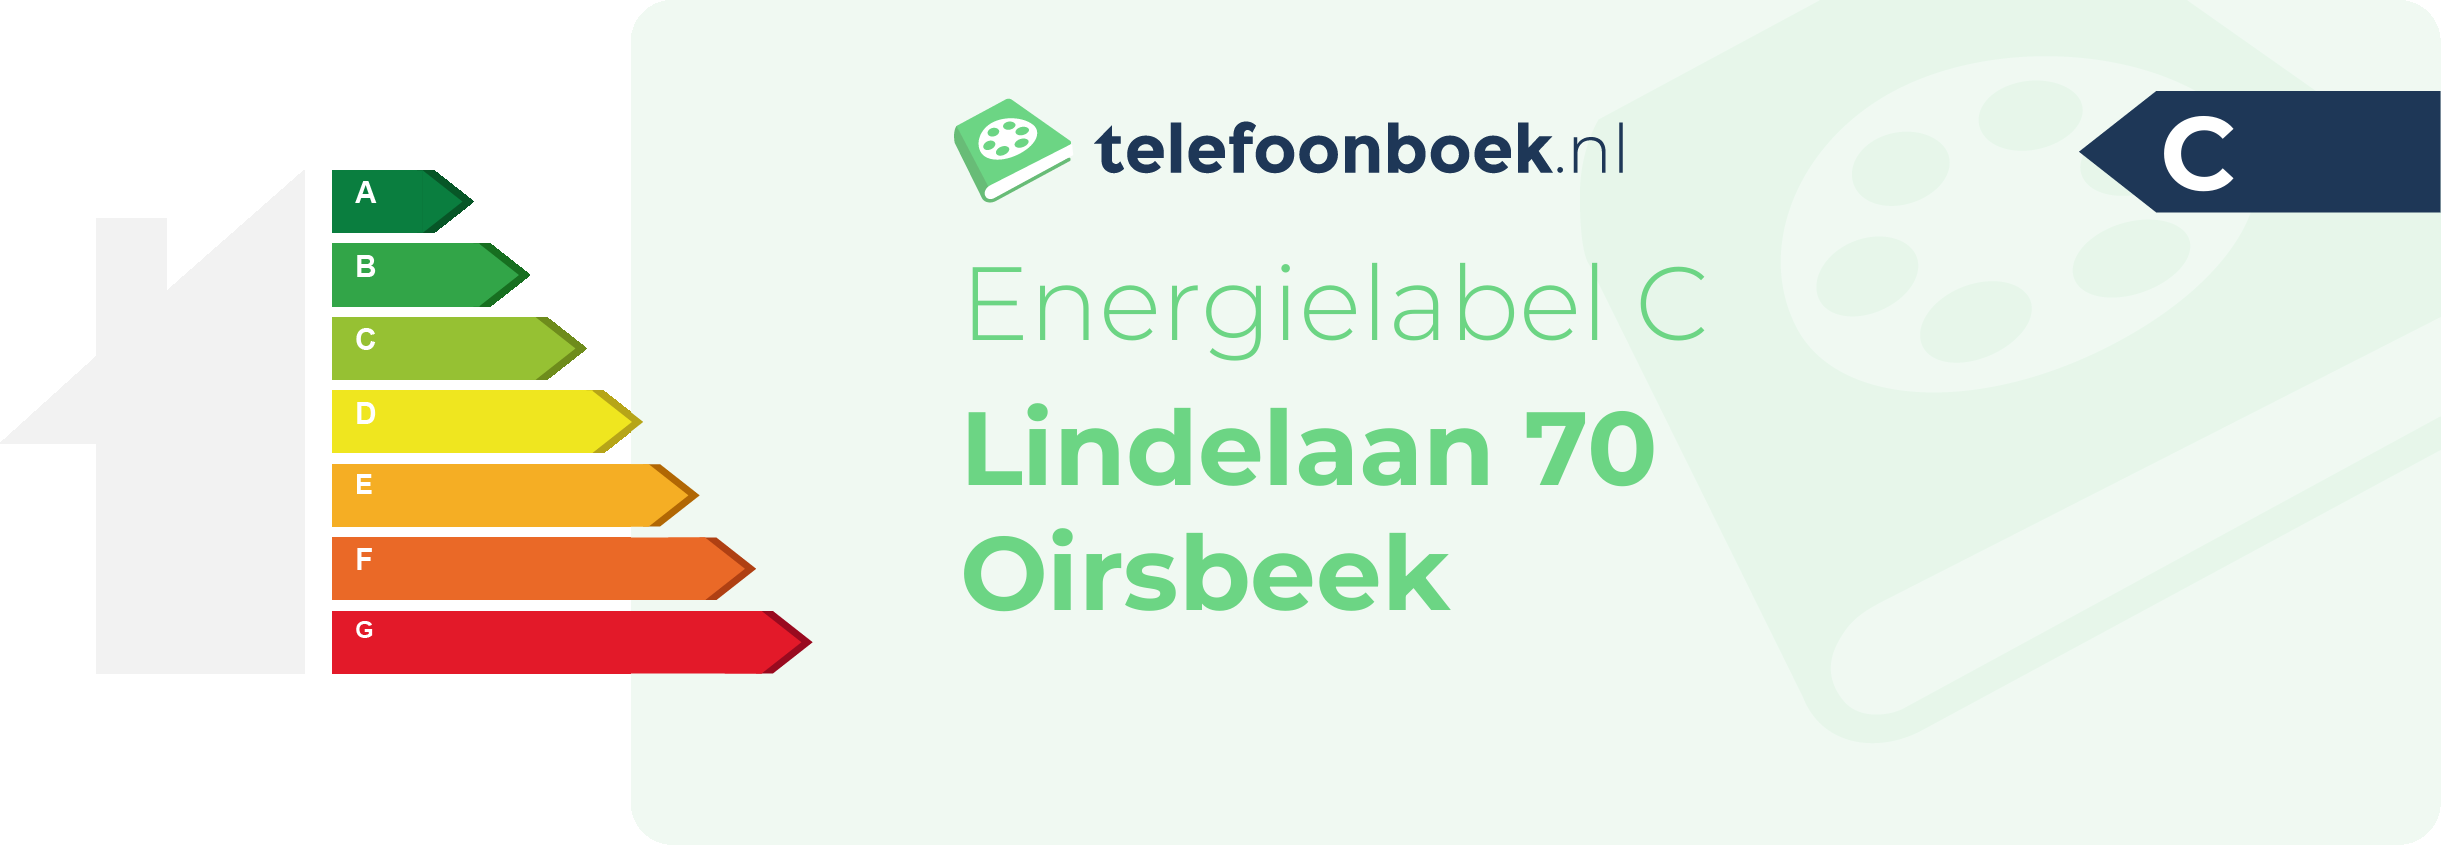 Energielabel Lindelaan 70 Oirsbeek